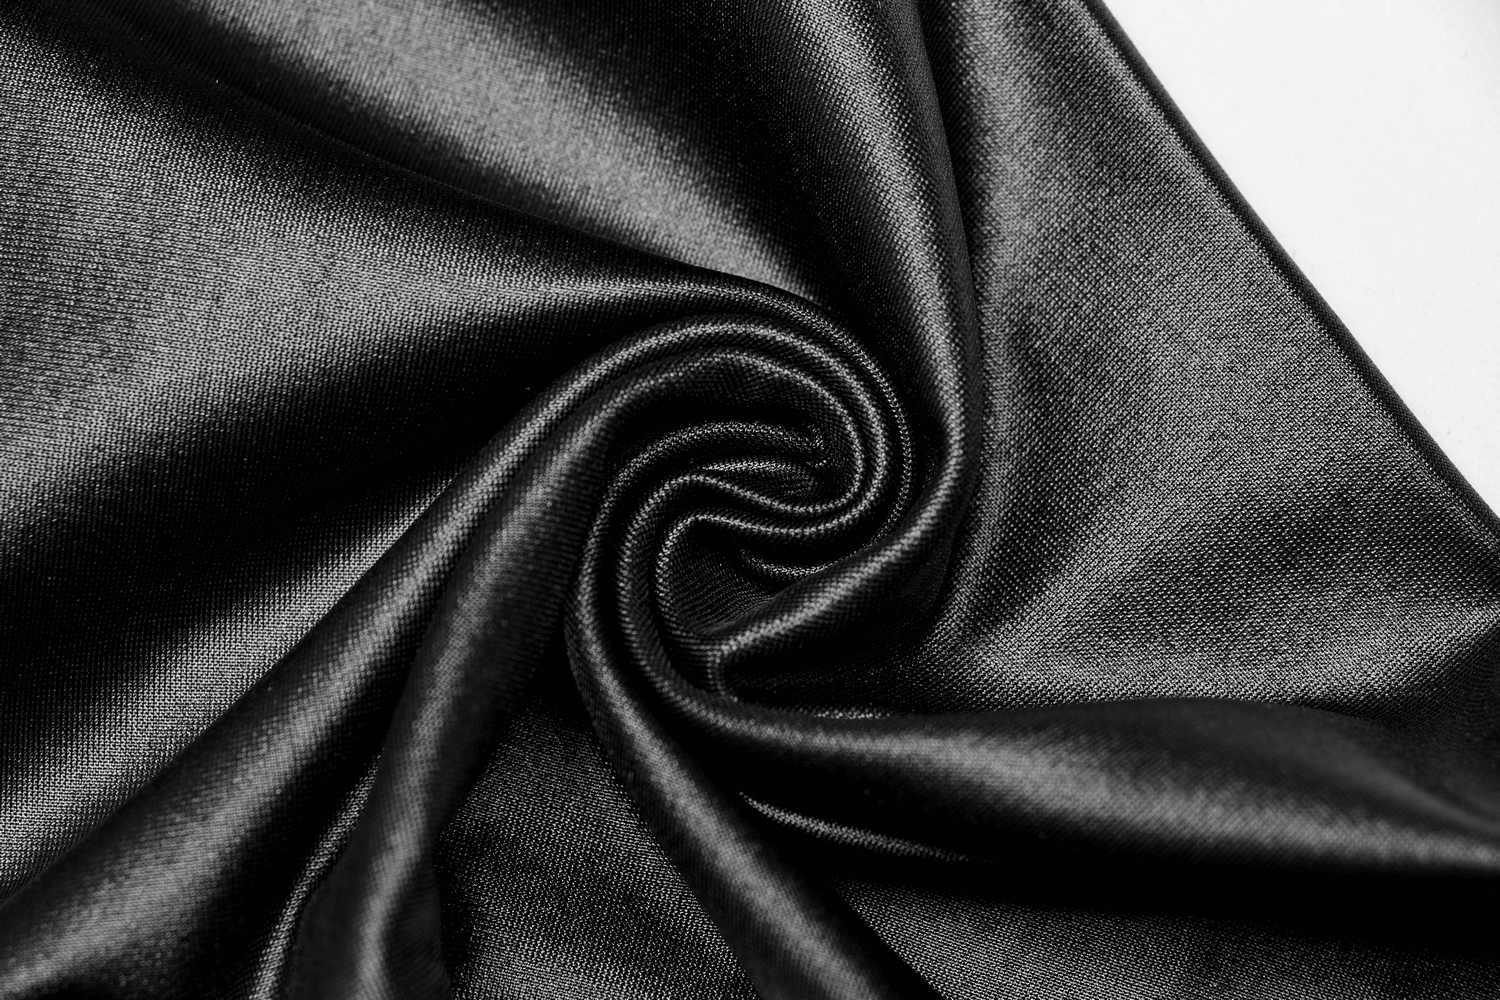 Elegant Lace Applique Black Faux Leather Leggings - HARD'N'HEAVY